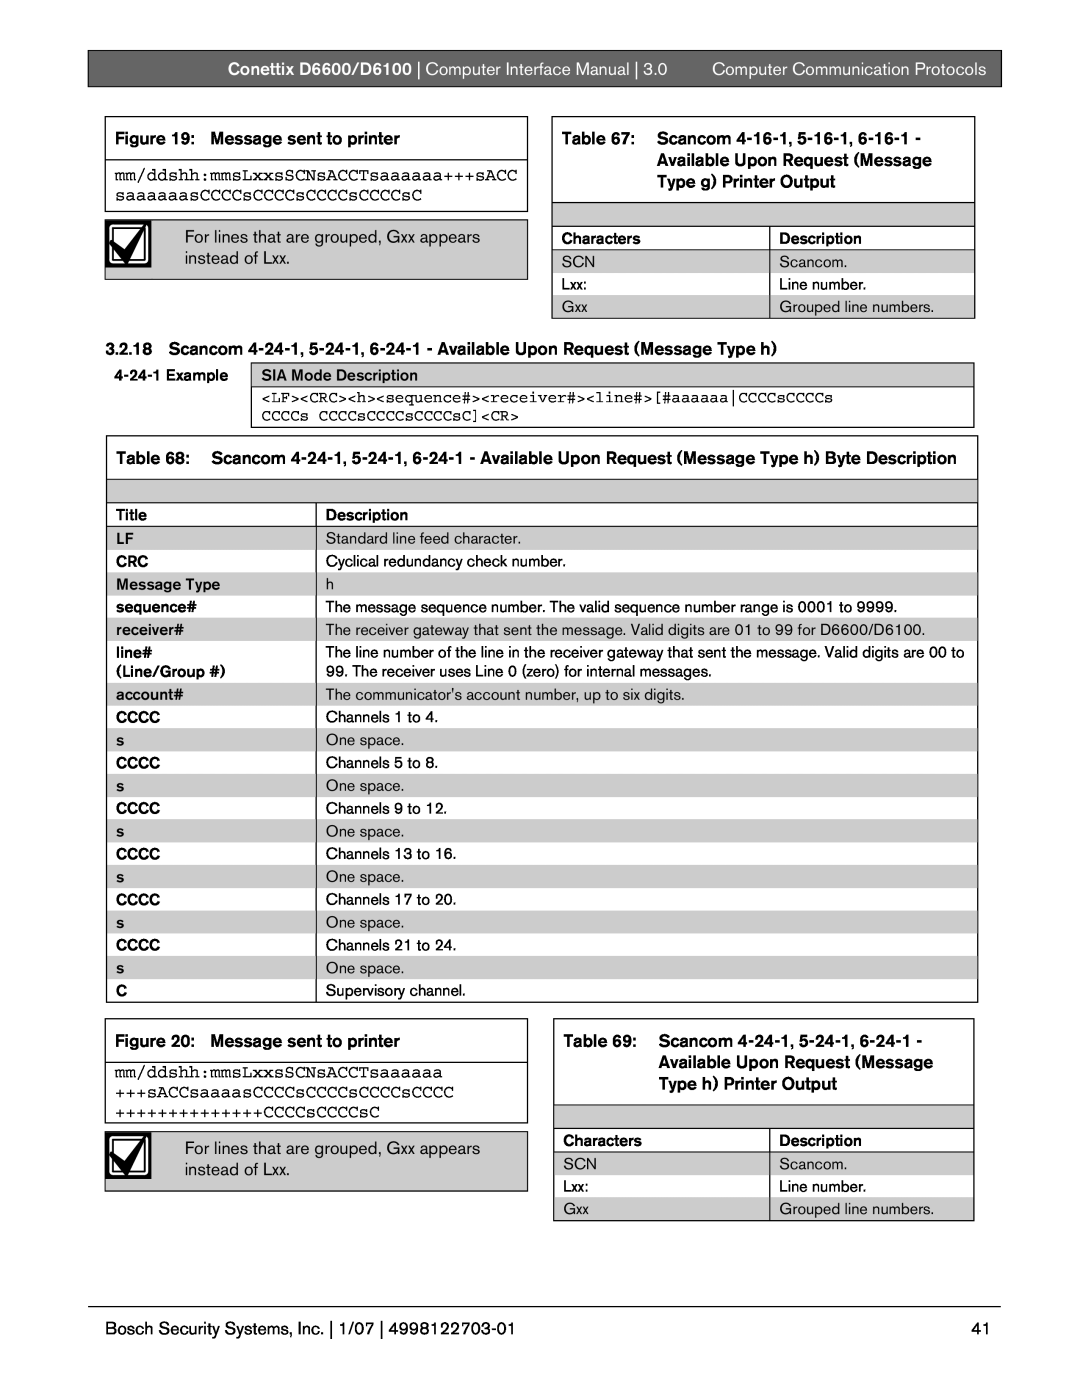 Bosch Appliances D6100, D6600 manual Message sent to printer, Computer Communication Protocols 